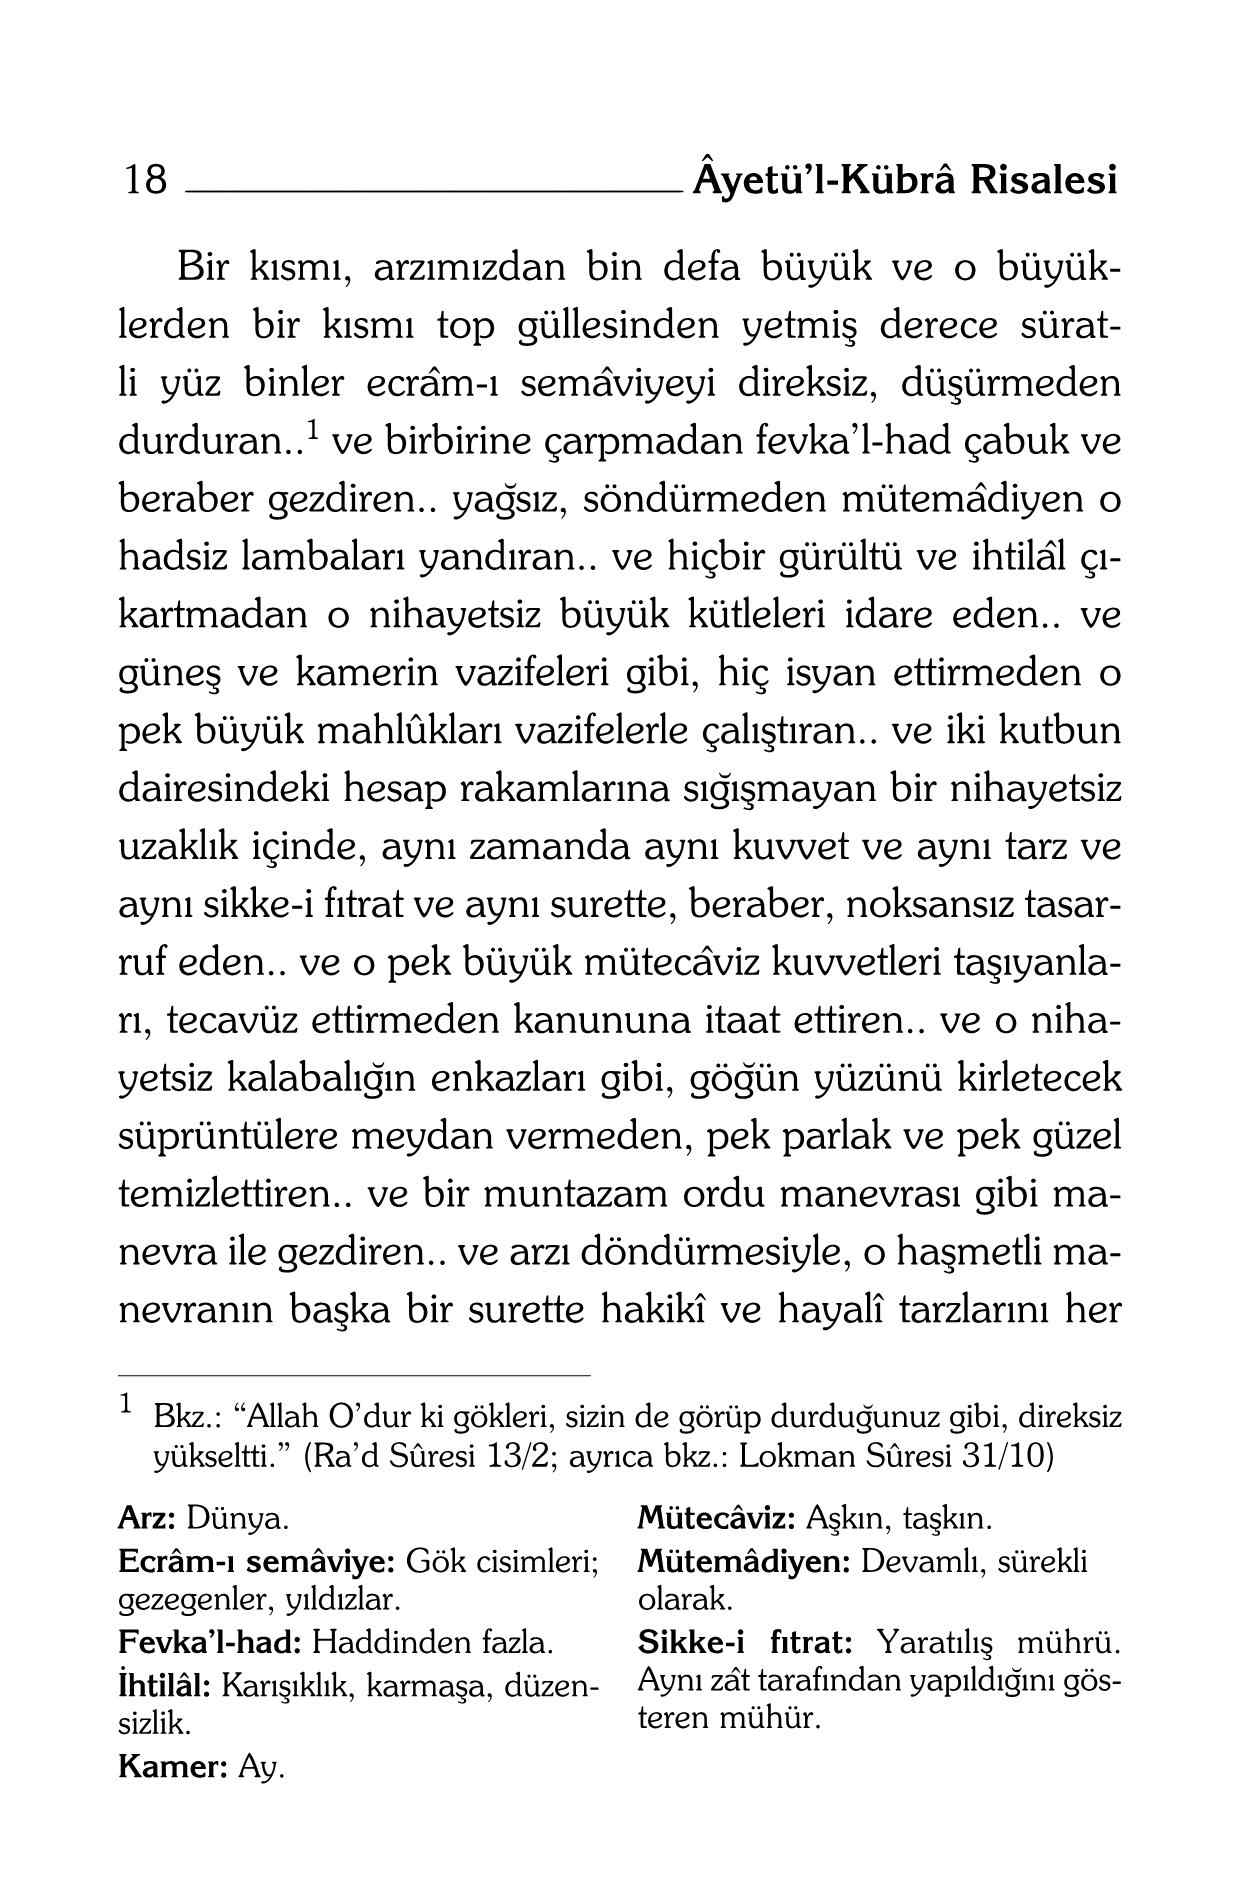 B Said Nursi - Ayet-ül Kübra Risalesi (Kelime Aciklamali) - SahdamarY.pdf, 321-Sayfa 